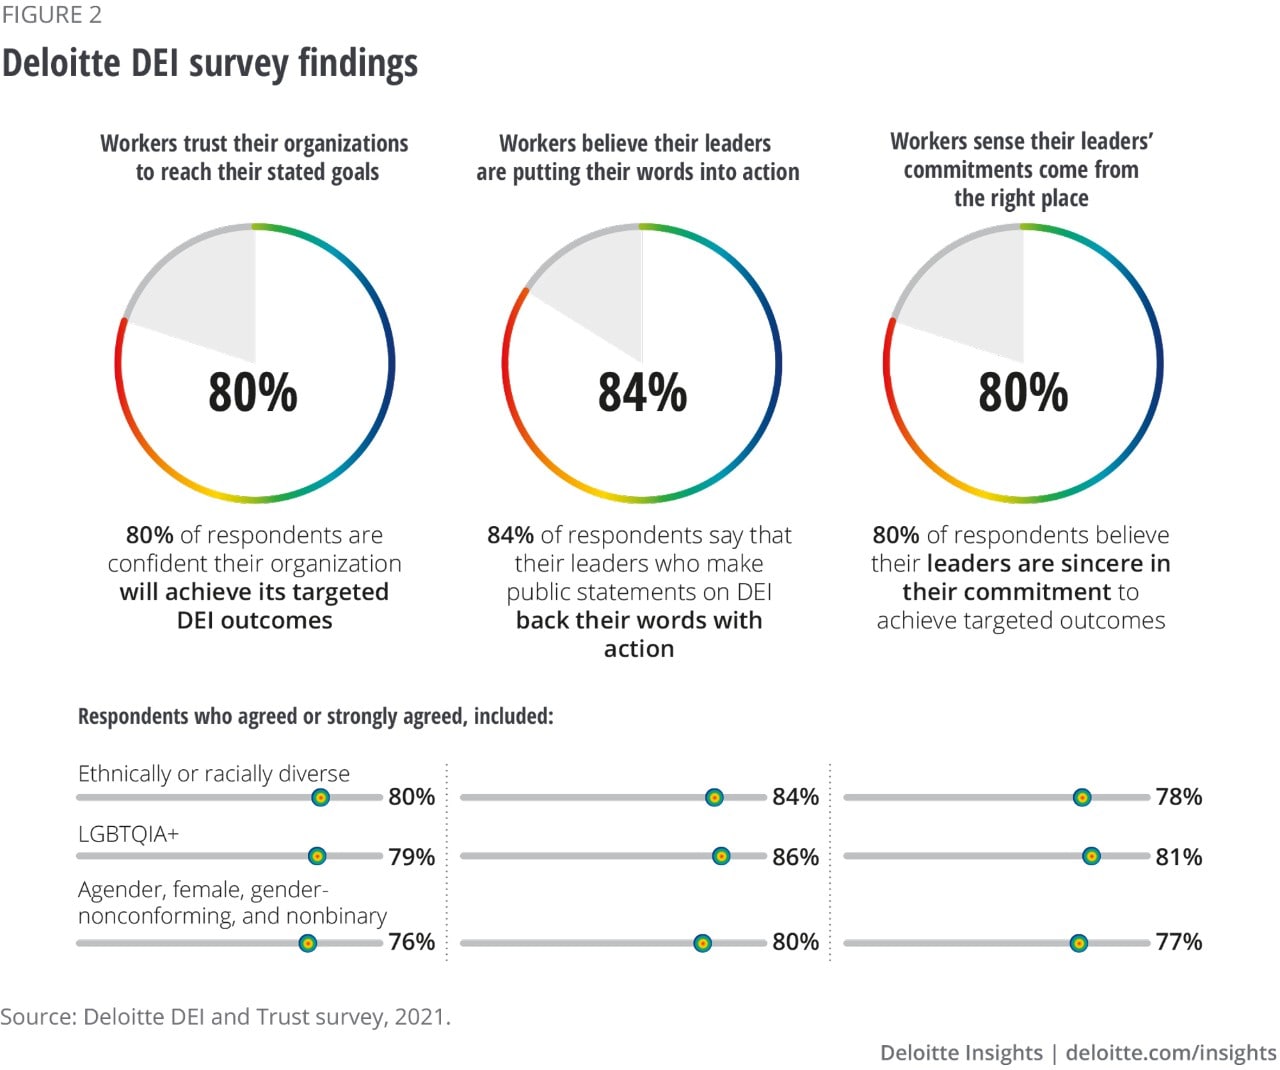 Figure 2. Deloitte DEI survey findings